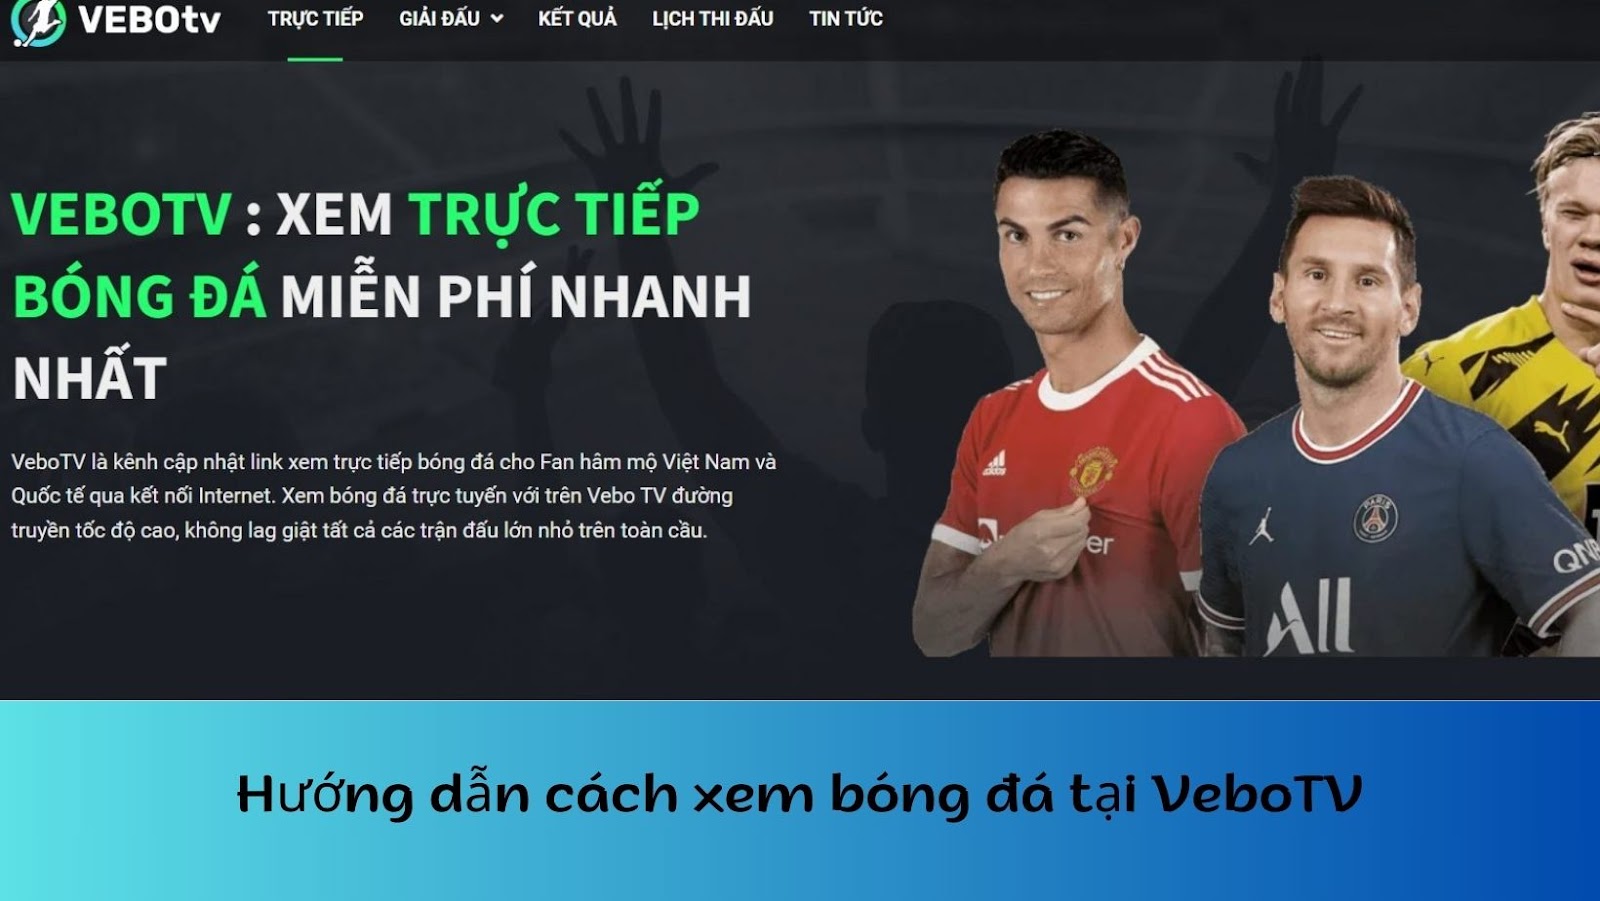 Hướng dẫn cách xem bóng đá trực tuyến miễn phí tại VeboTV